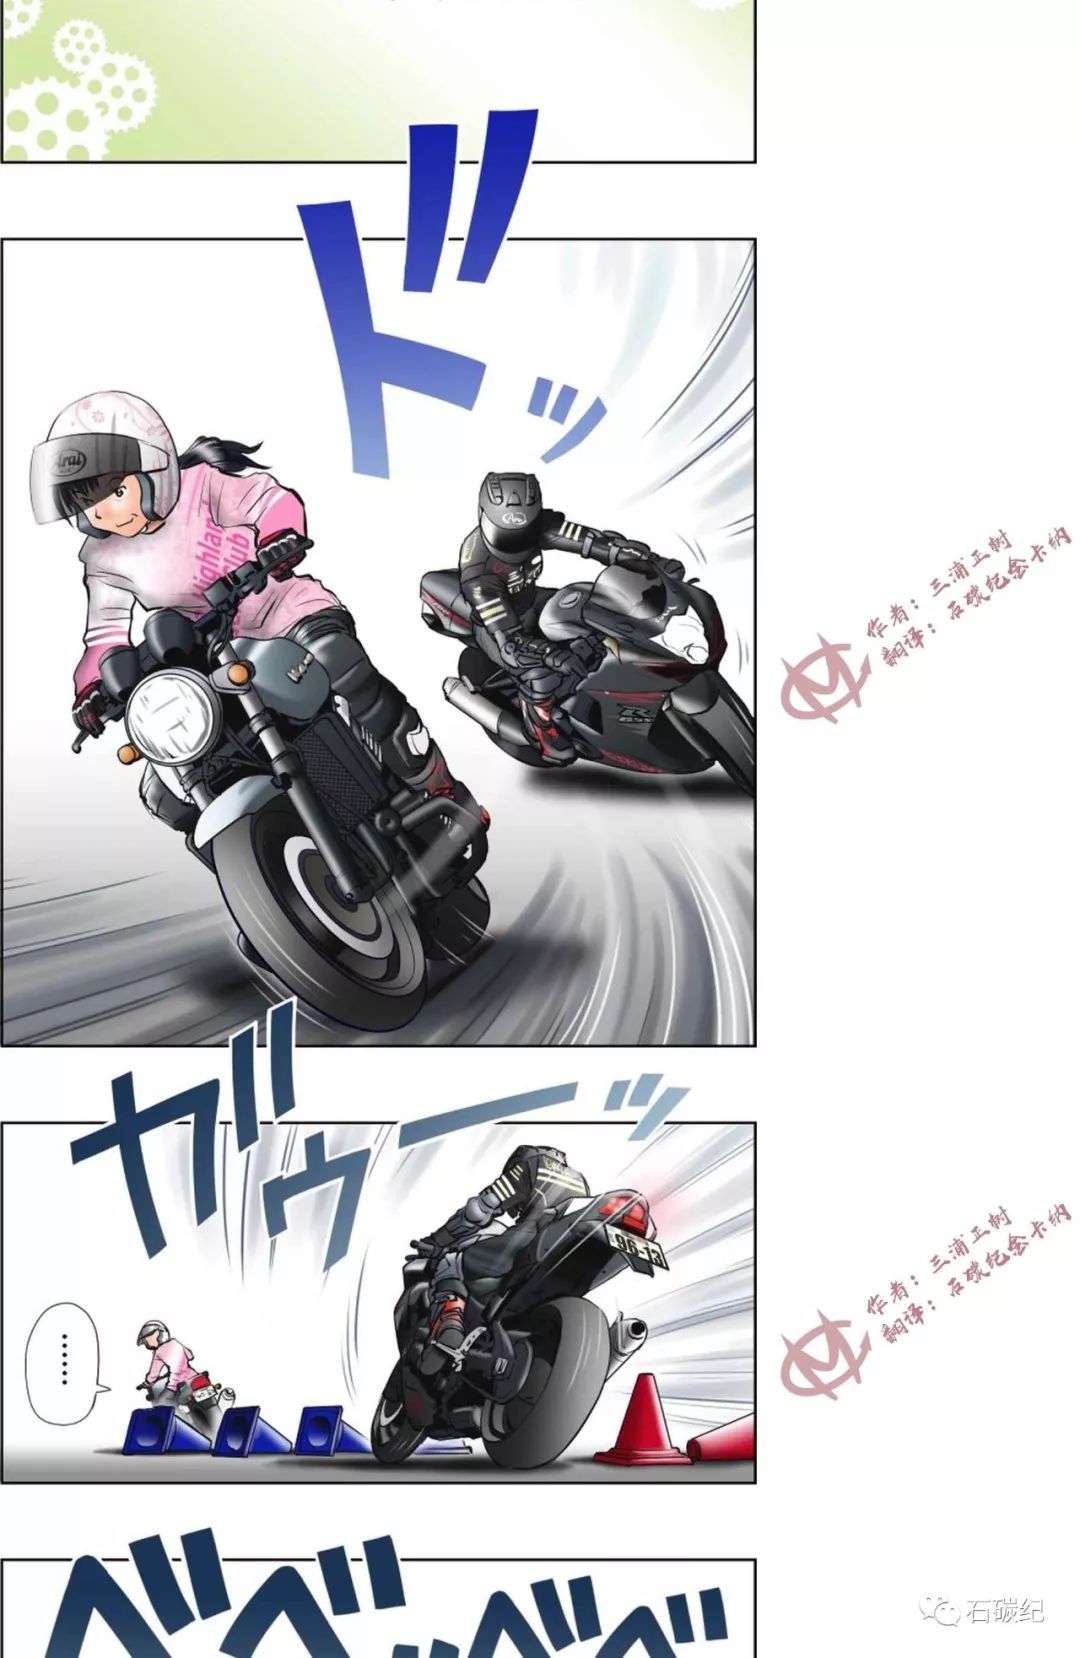 日本带有摩托车的动漫图片大全 Uc今日头条新闻网